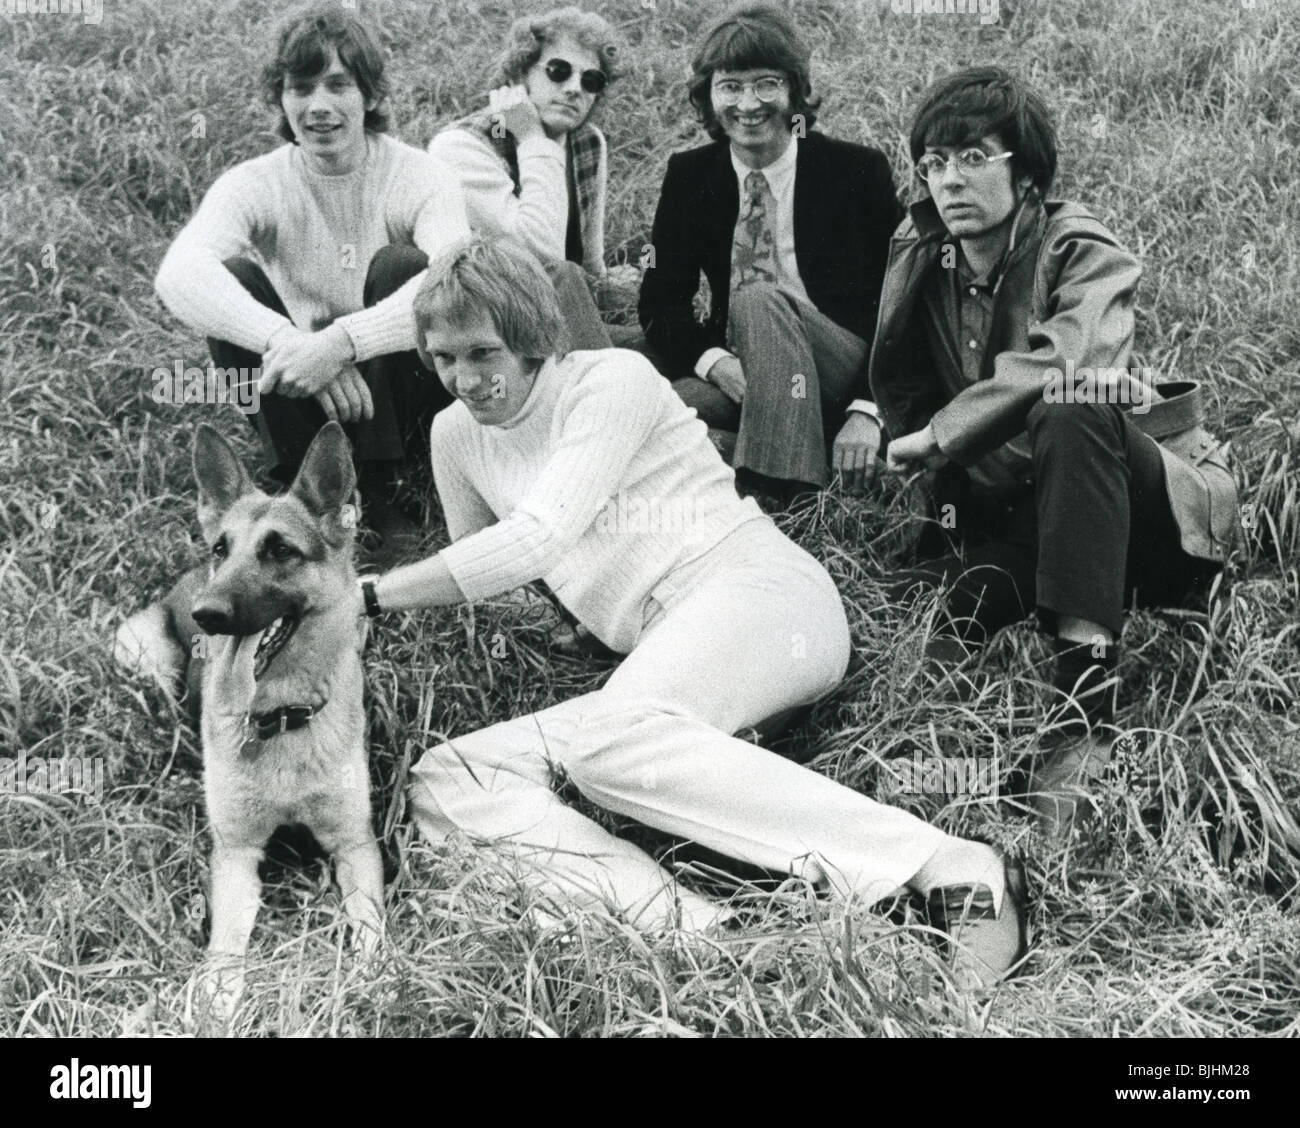 MANFRED MANN - grupo británico en 1968 con Mike d'Abo - ver descripción abajo para alineación Foto de stock